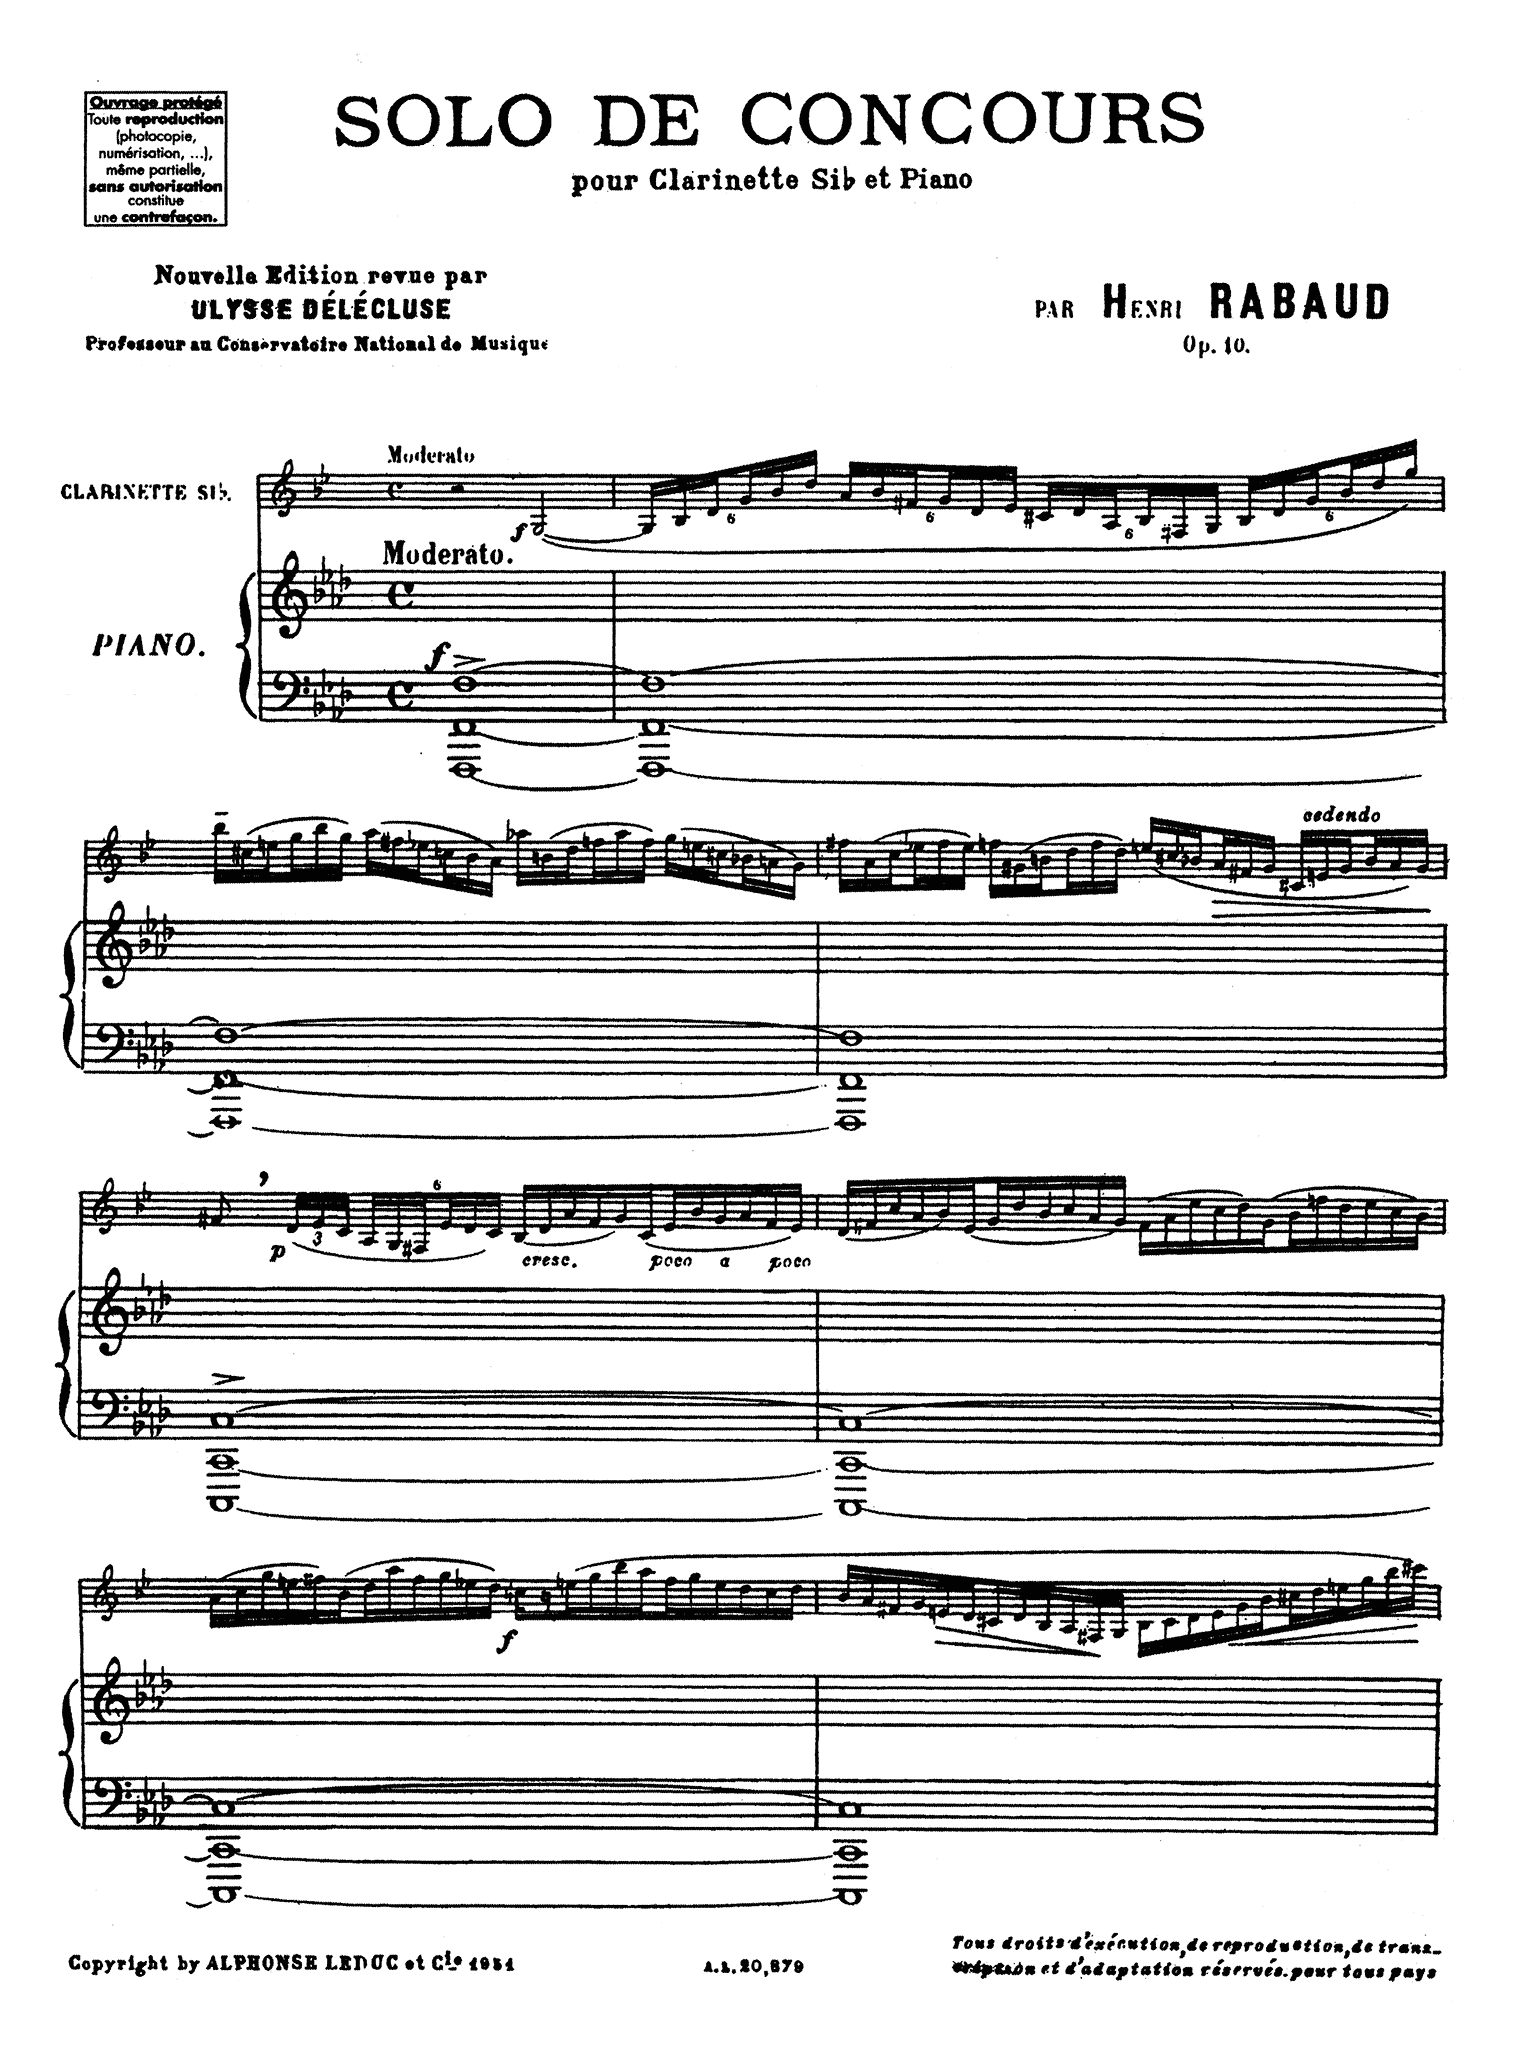 Rabaud Solo de concours, Op. 10 Clarinet & Piano score